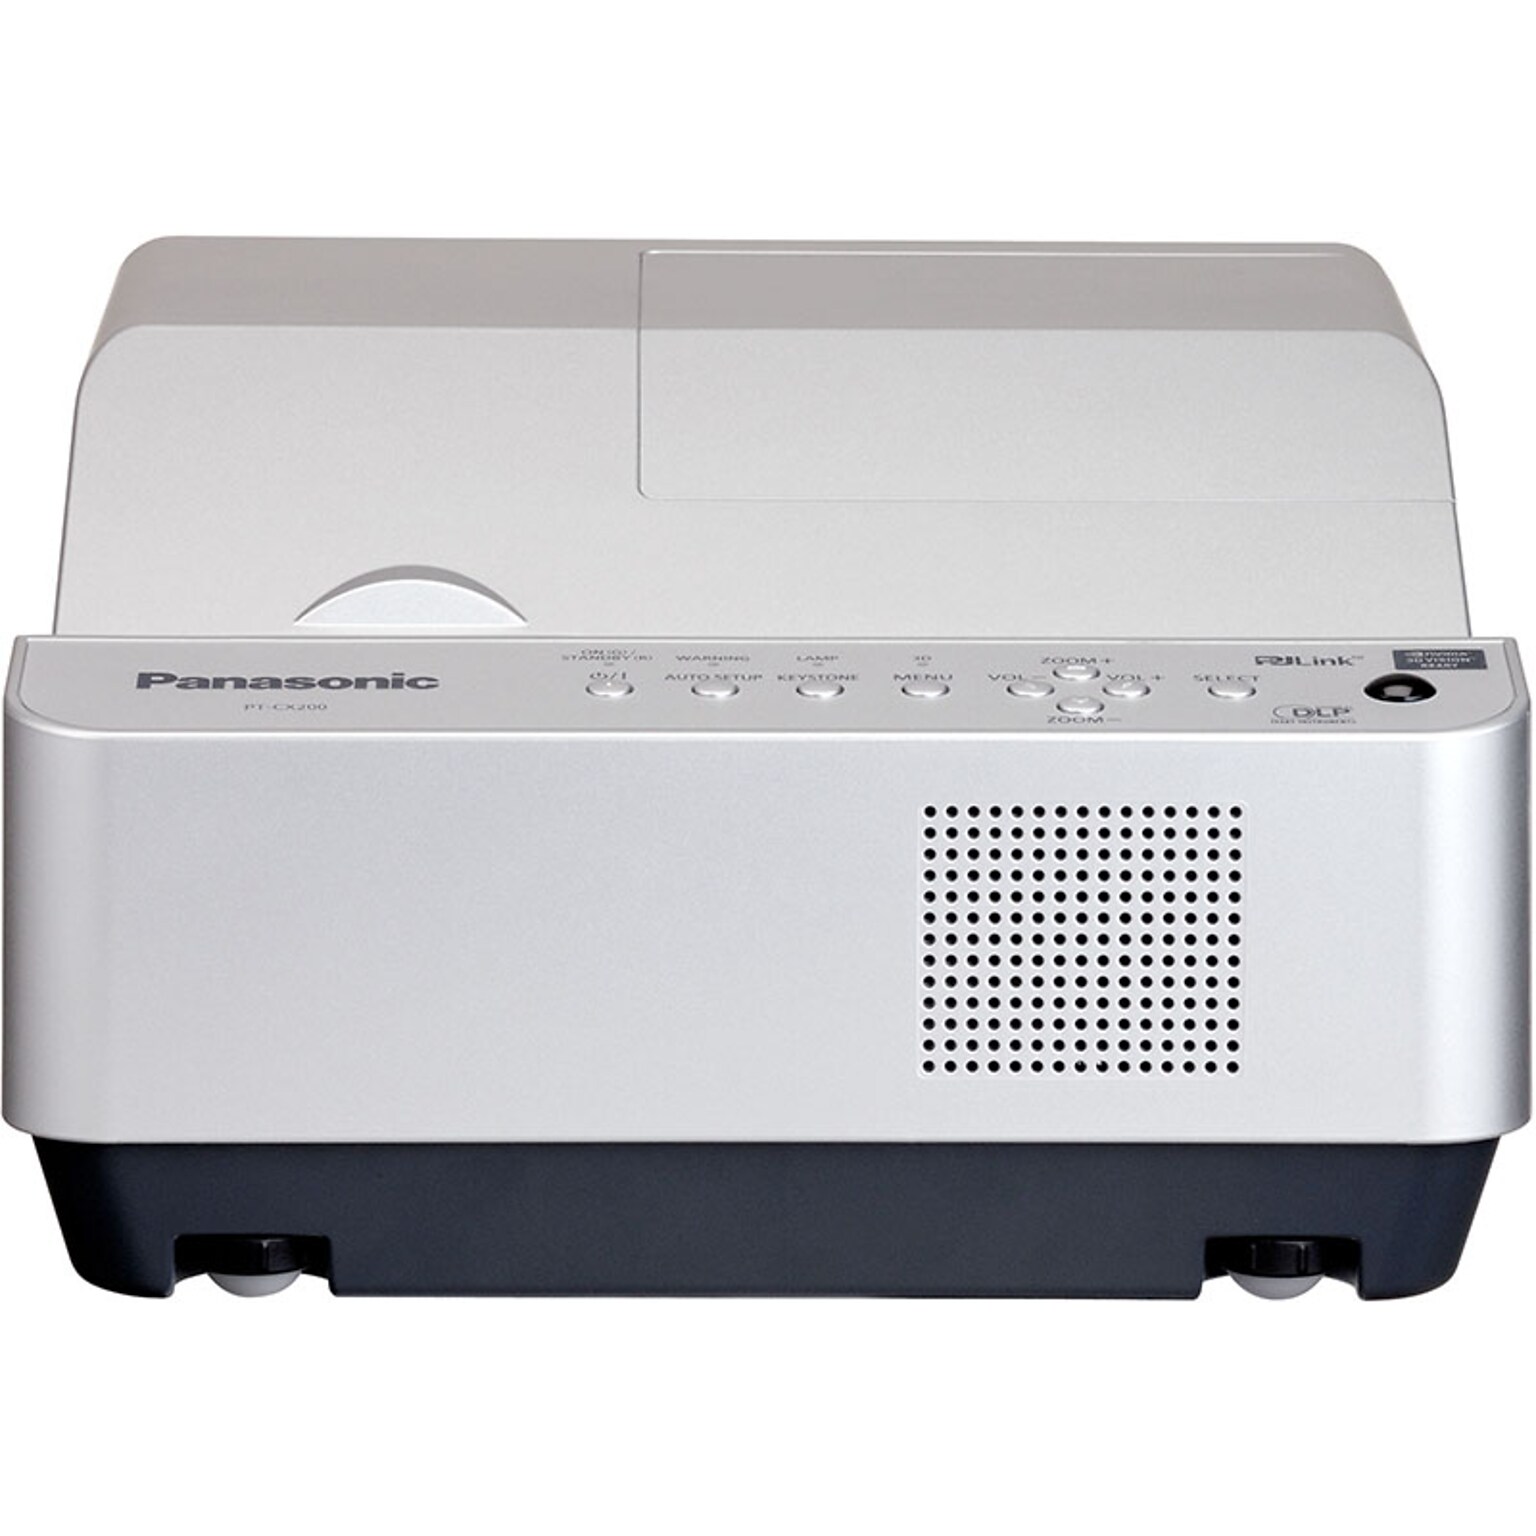 Panasonic PT-CX200U - DLP projector - 3D (PTCX200U)